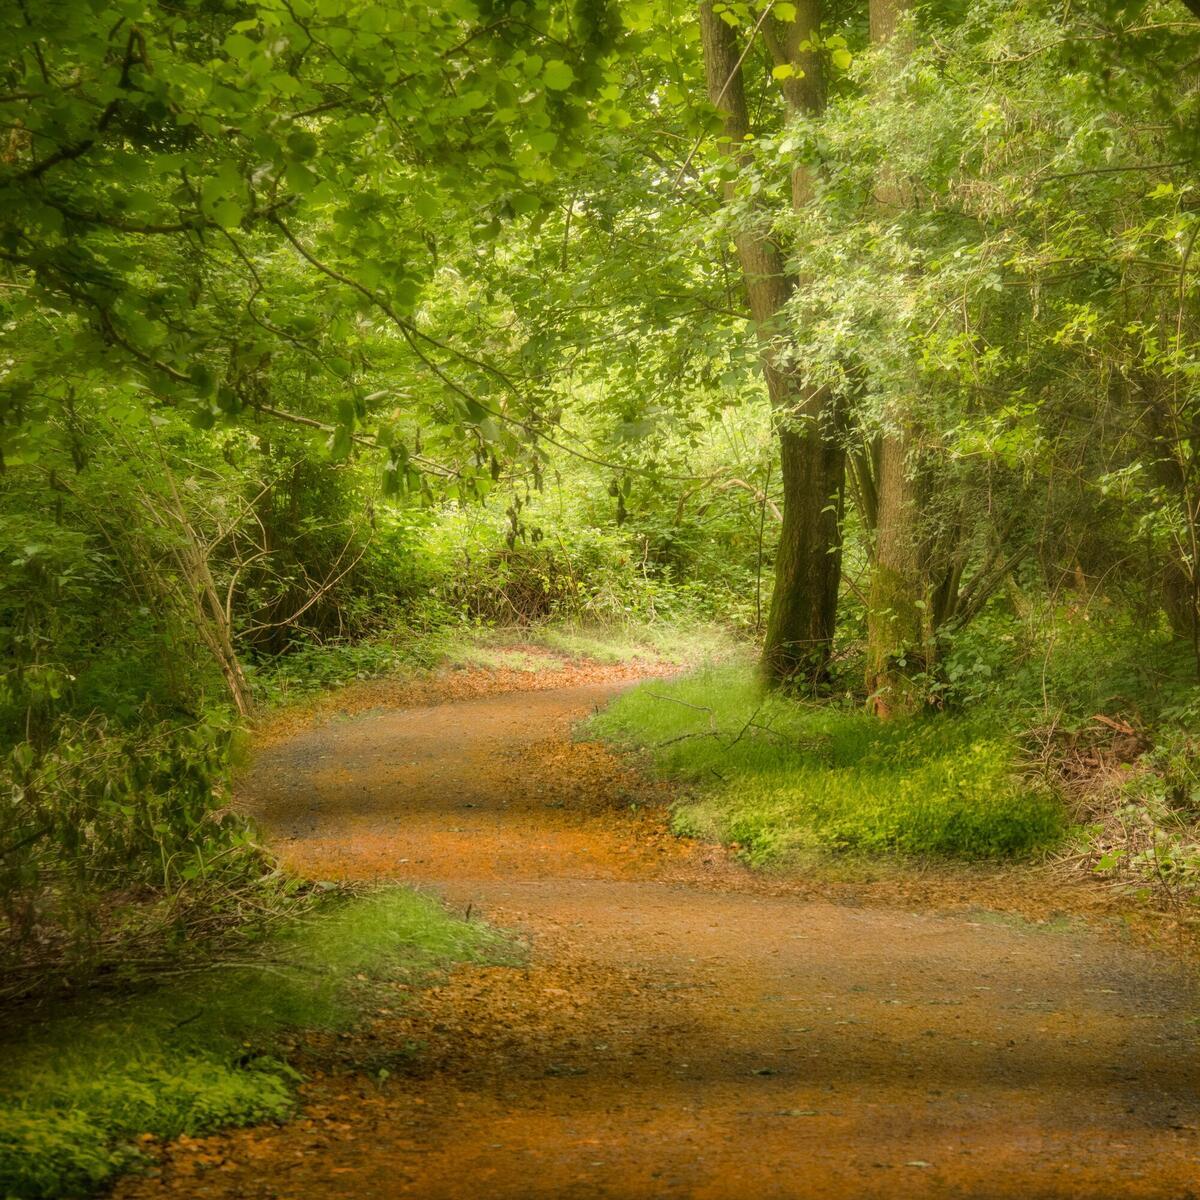 Woodland walk and nature trail at Arrow Bank